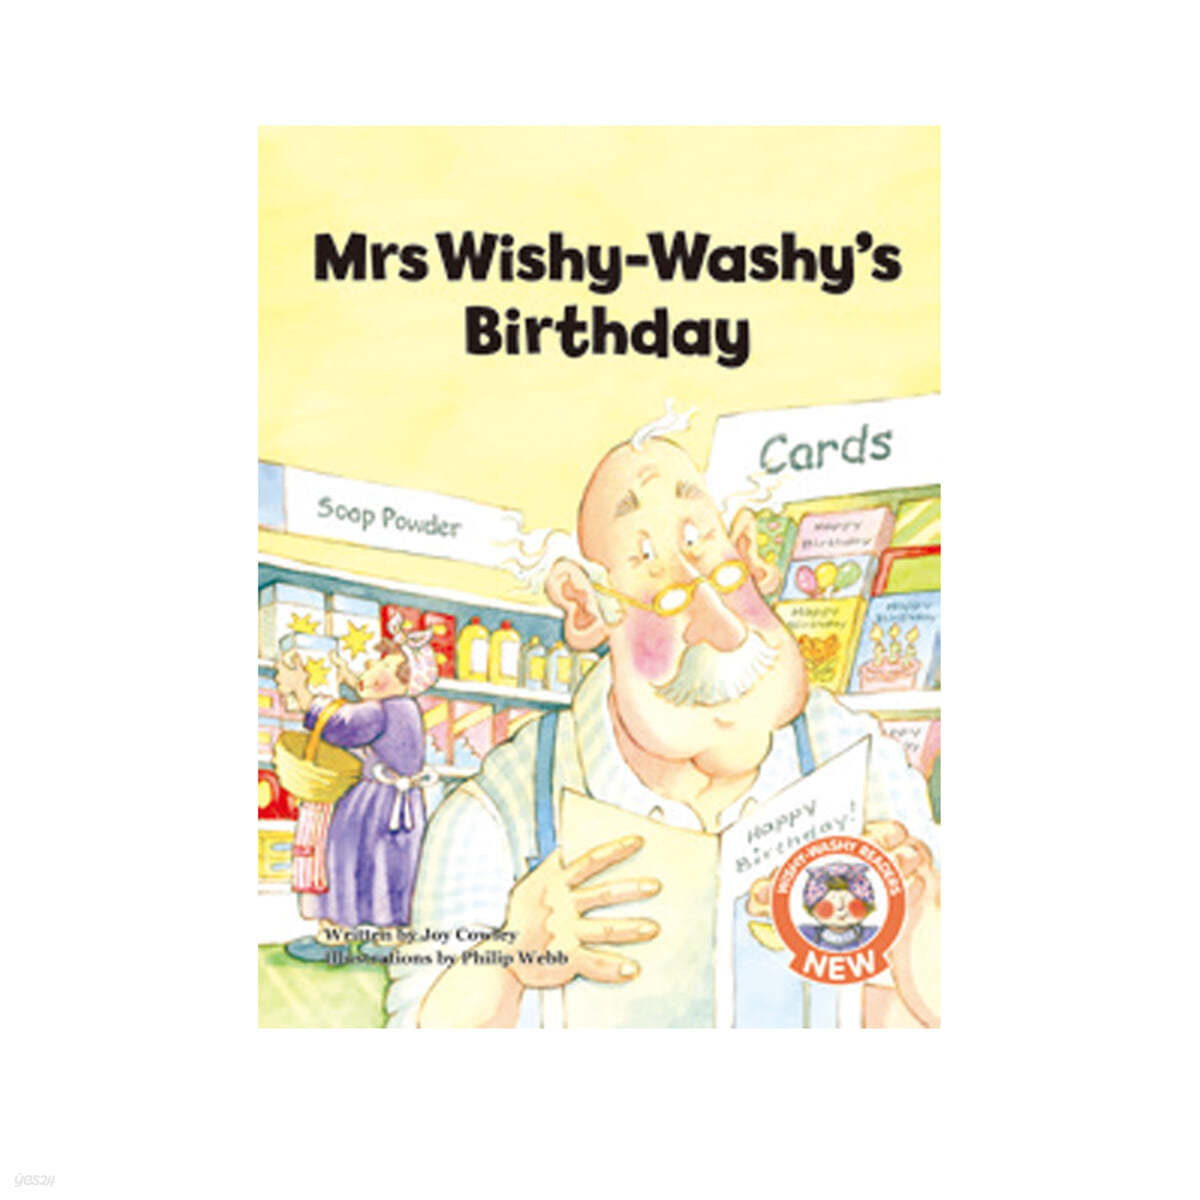 Mrs wishy-washy's birthday